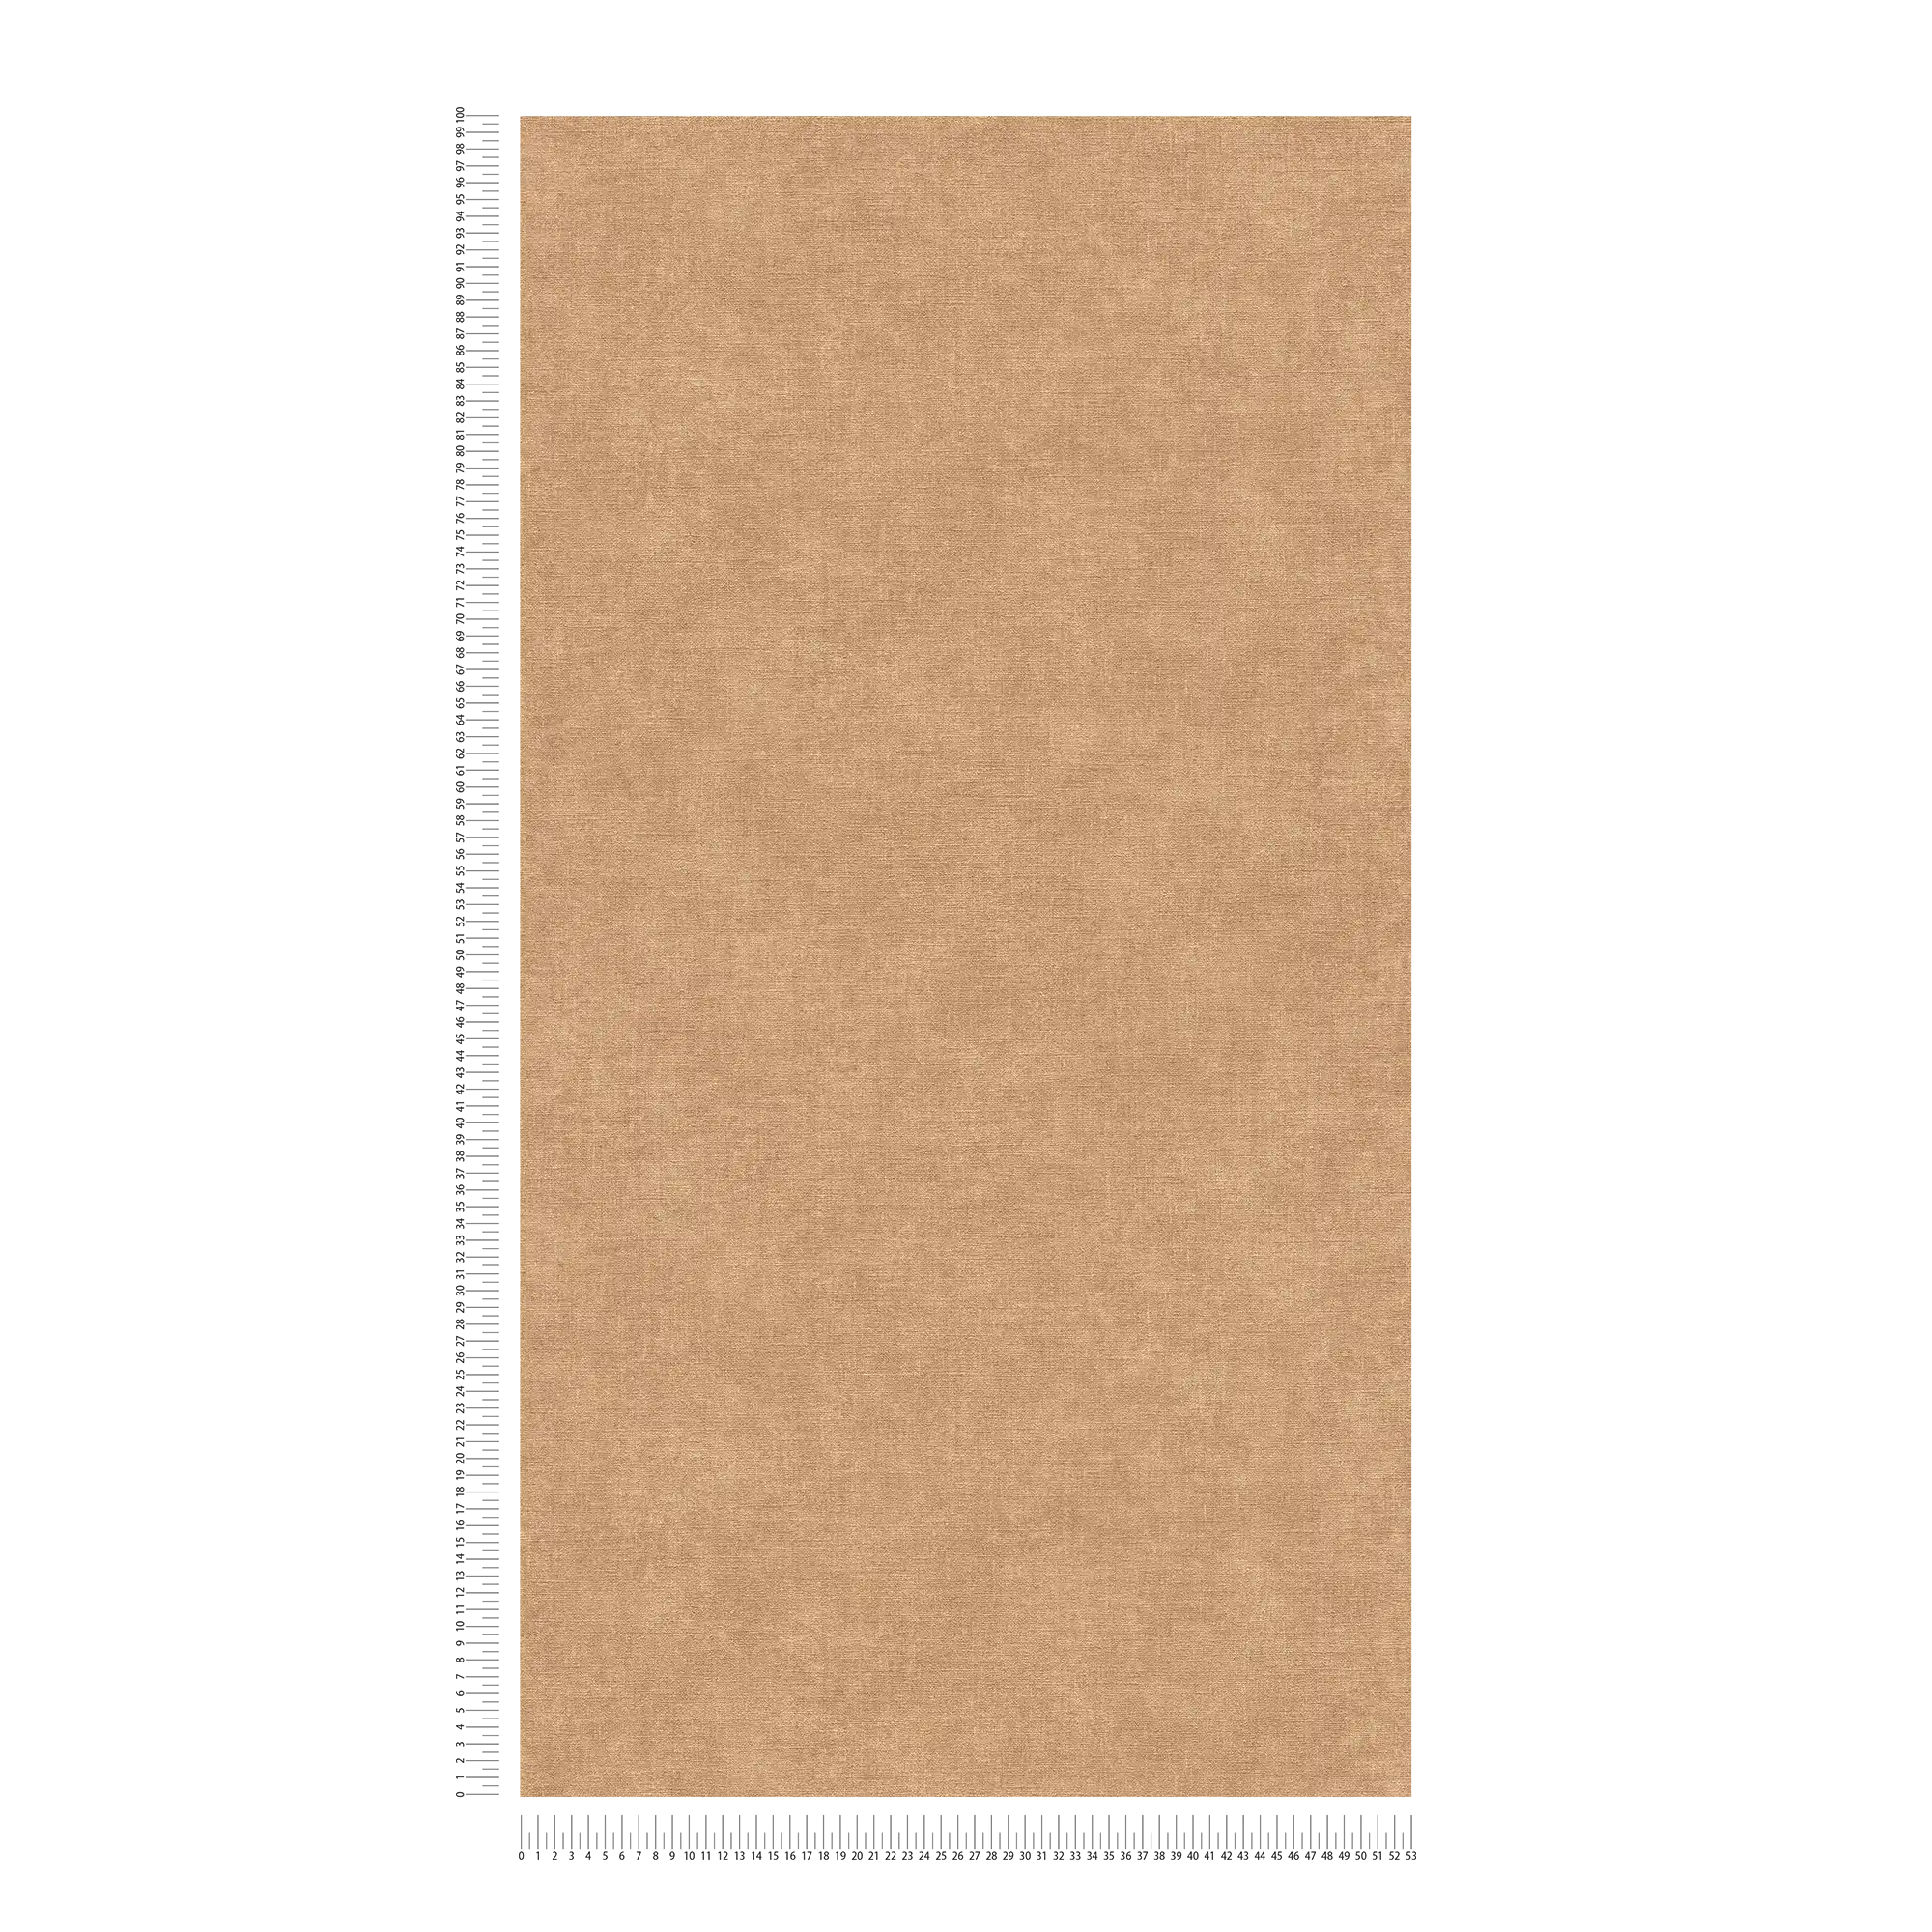             Papel pintado unitario con textura ligera en aspecto textil - marrón, beige
        